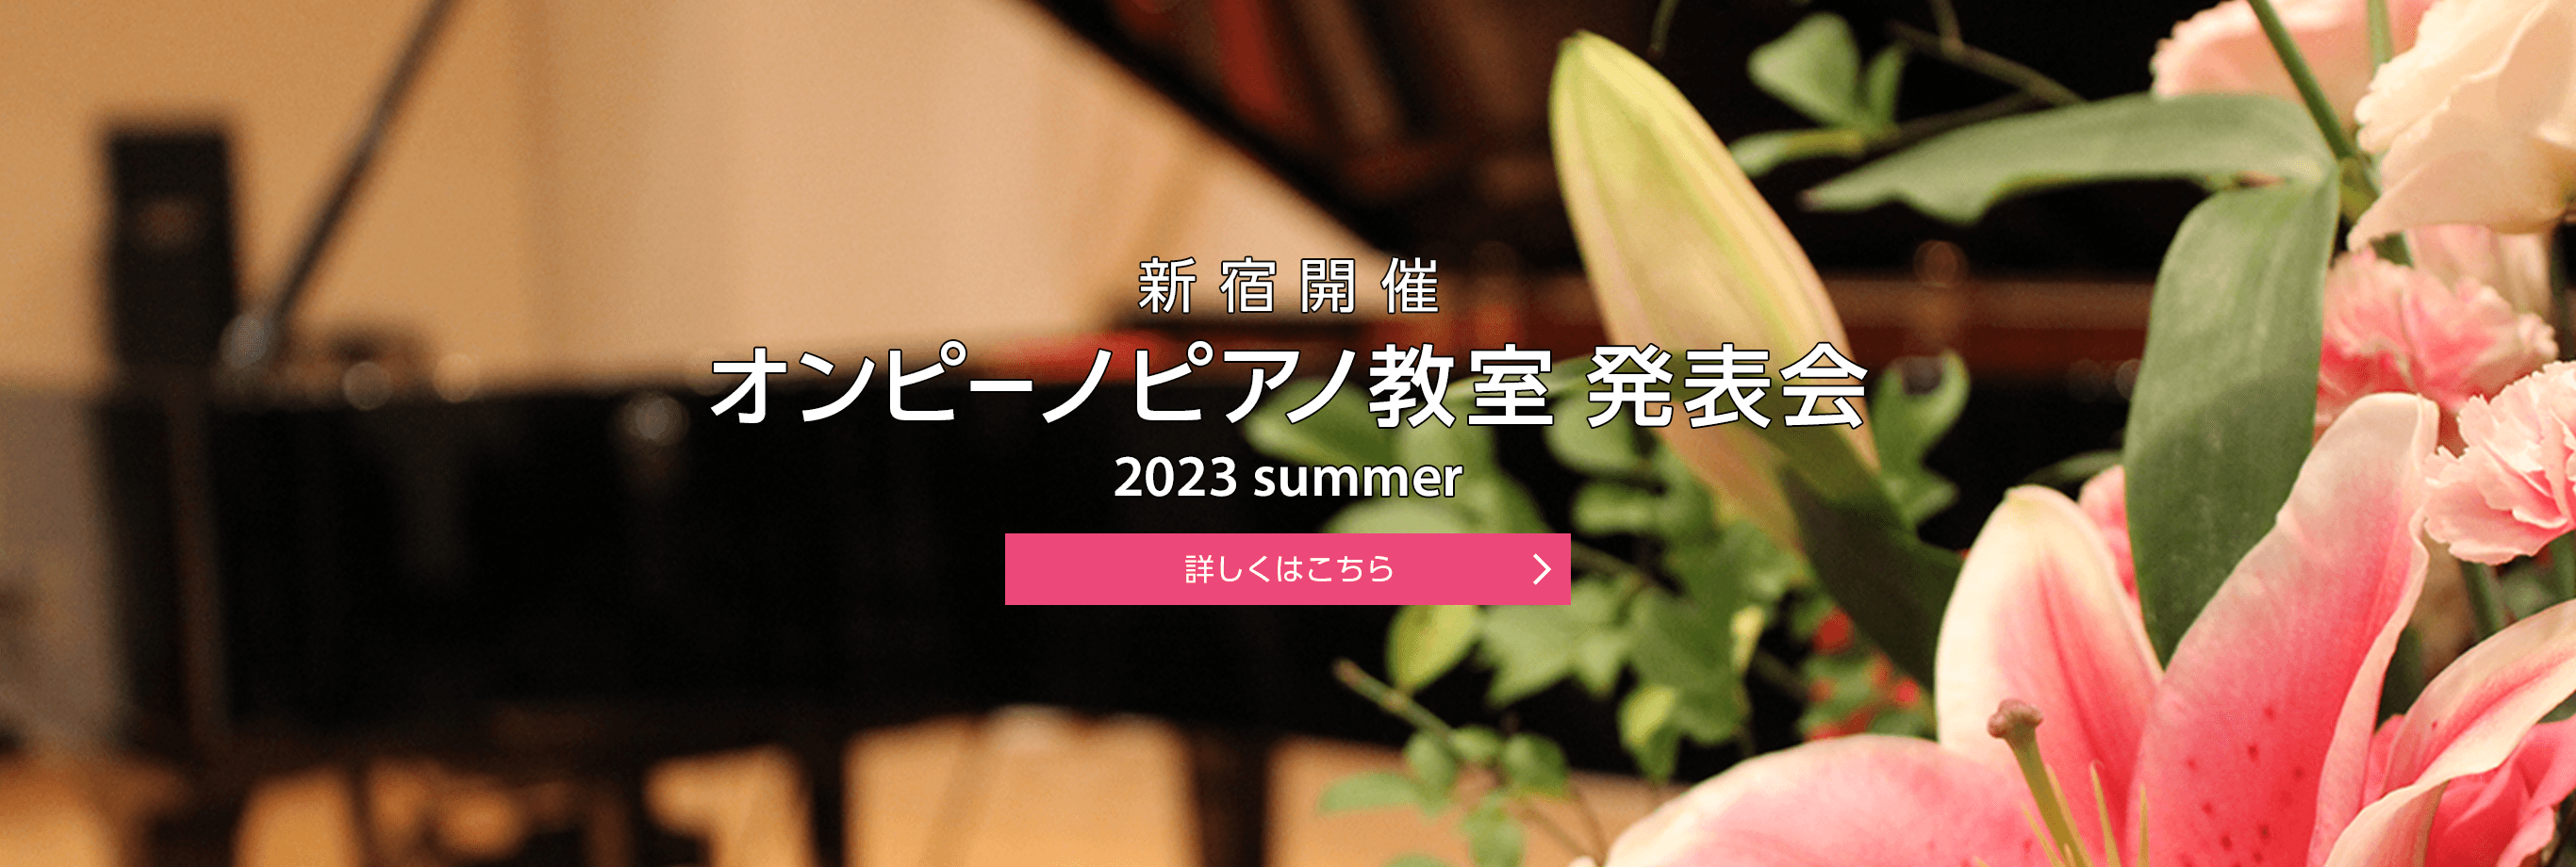 新宿開催 オンピーノピアノ教室 発表会 2022 summer 詳しくはこちら